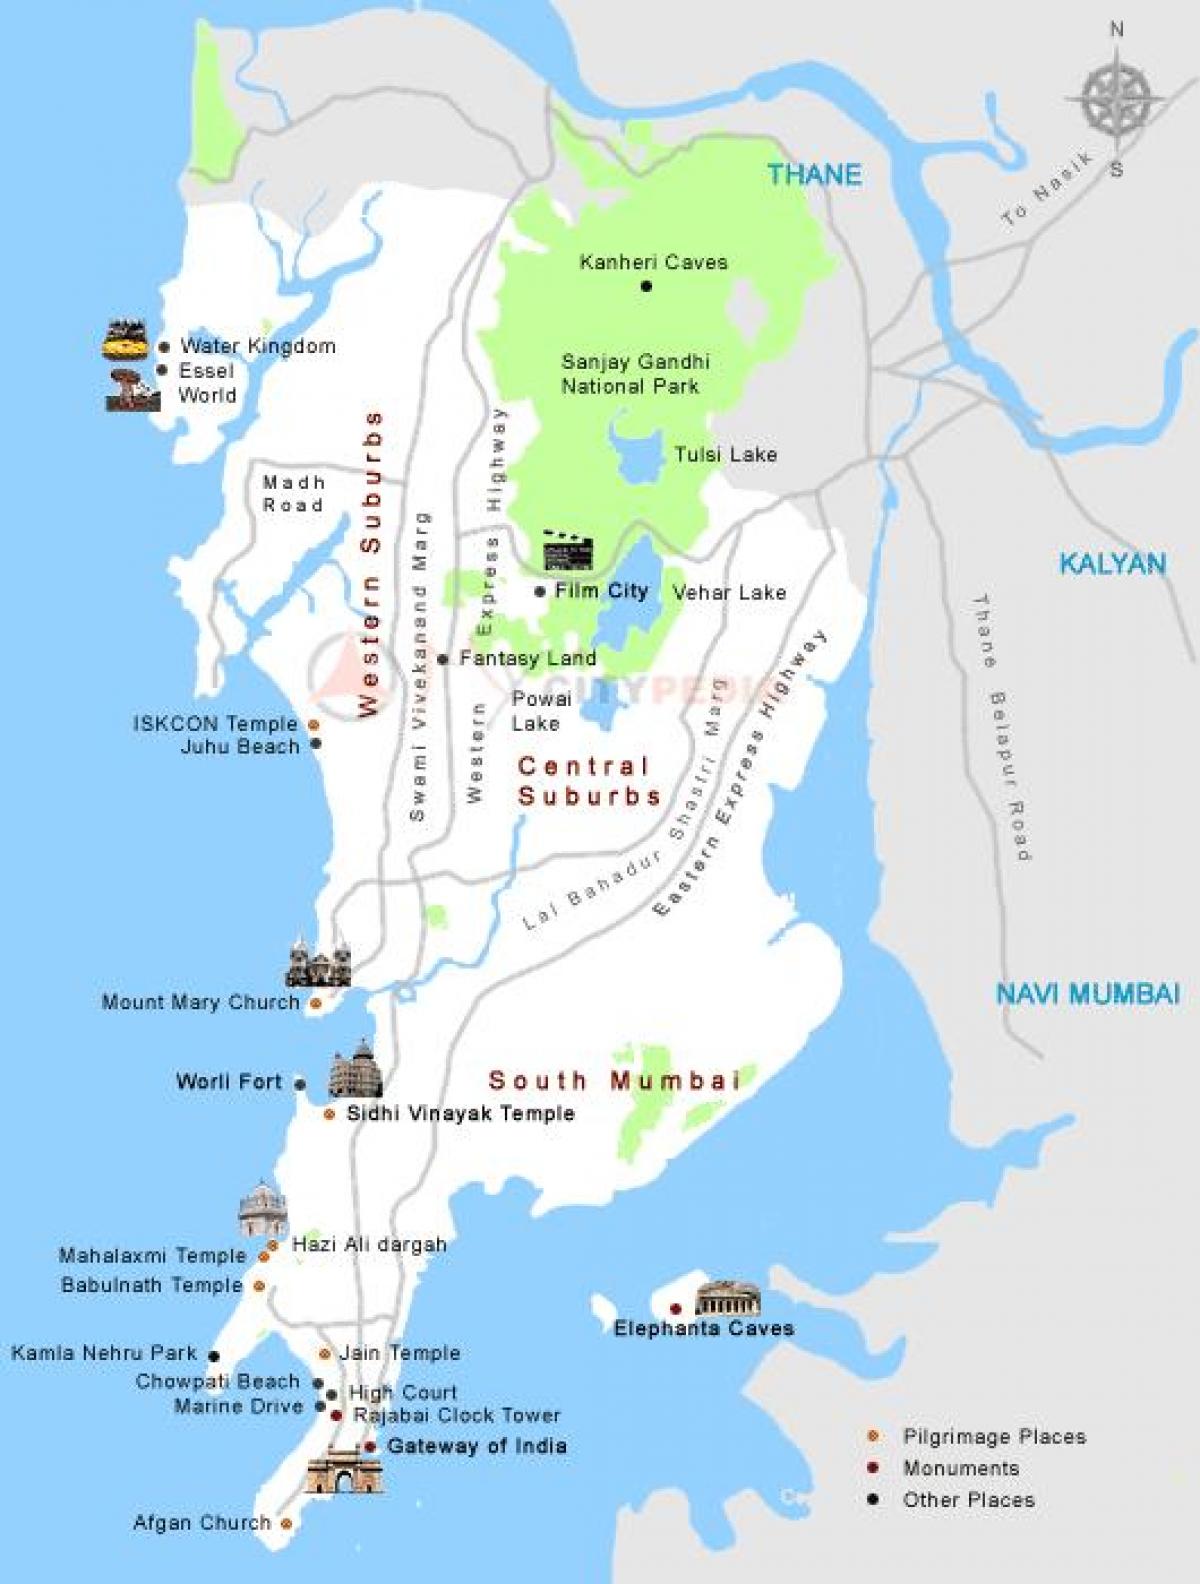 Даршан mumbai находится на карте